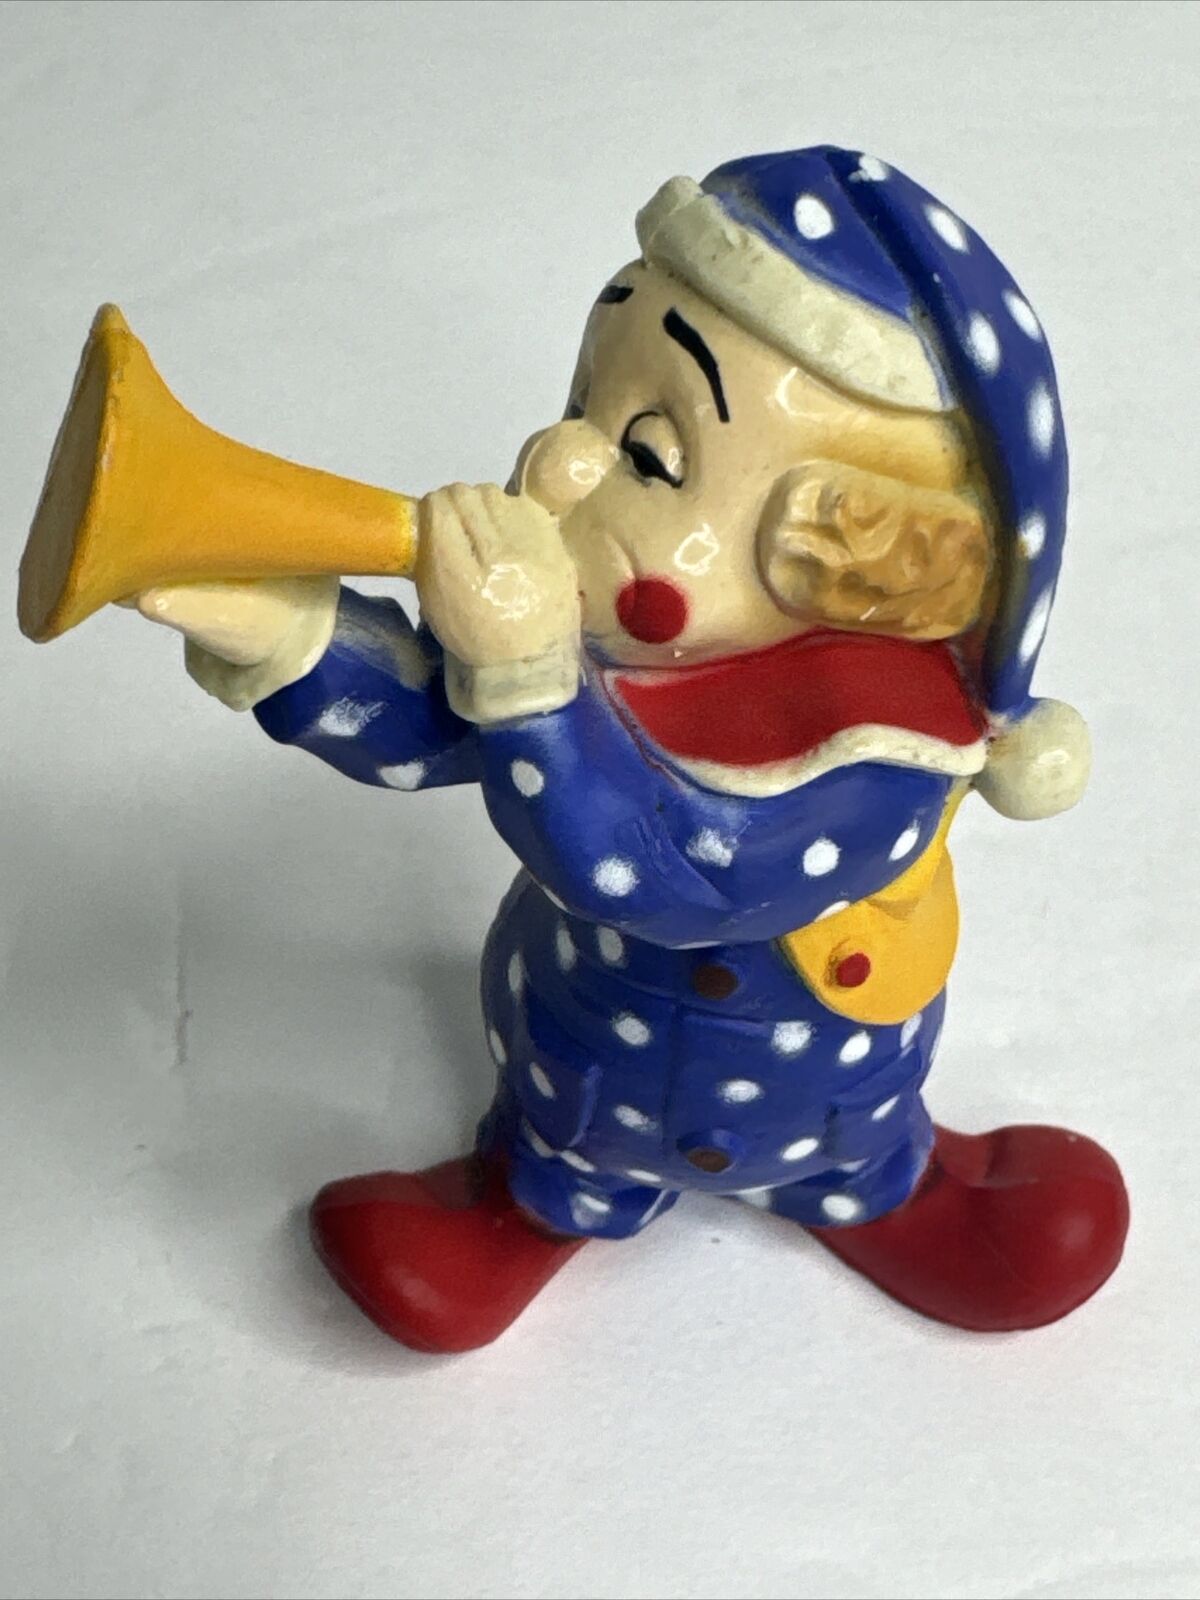 Creepy Circus Clown  Figurine Blowing A Horn 3 Inch